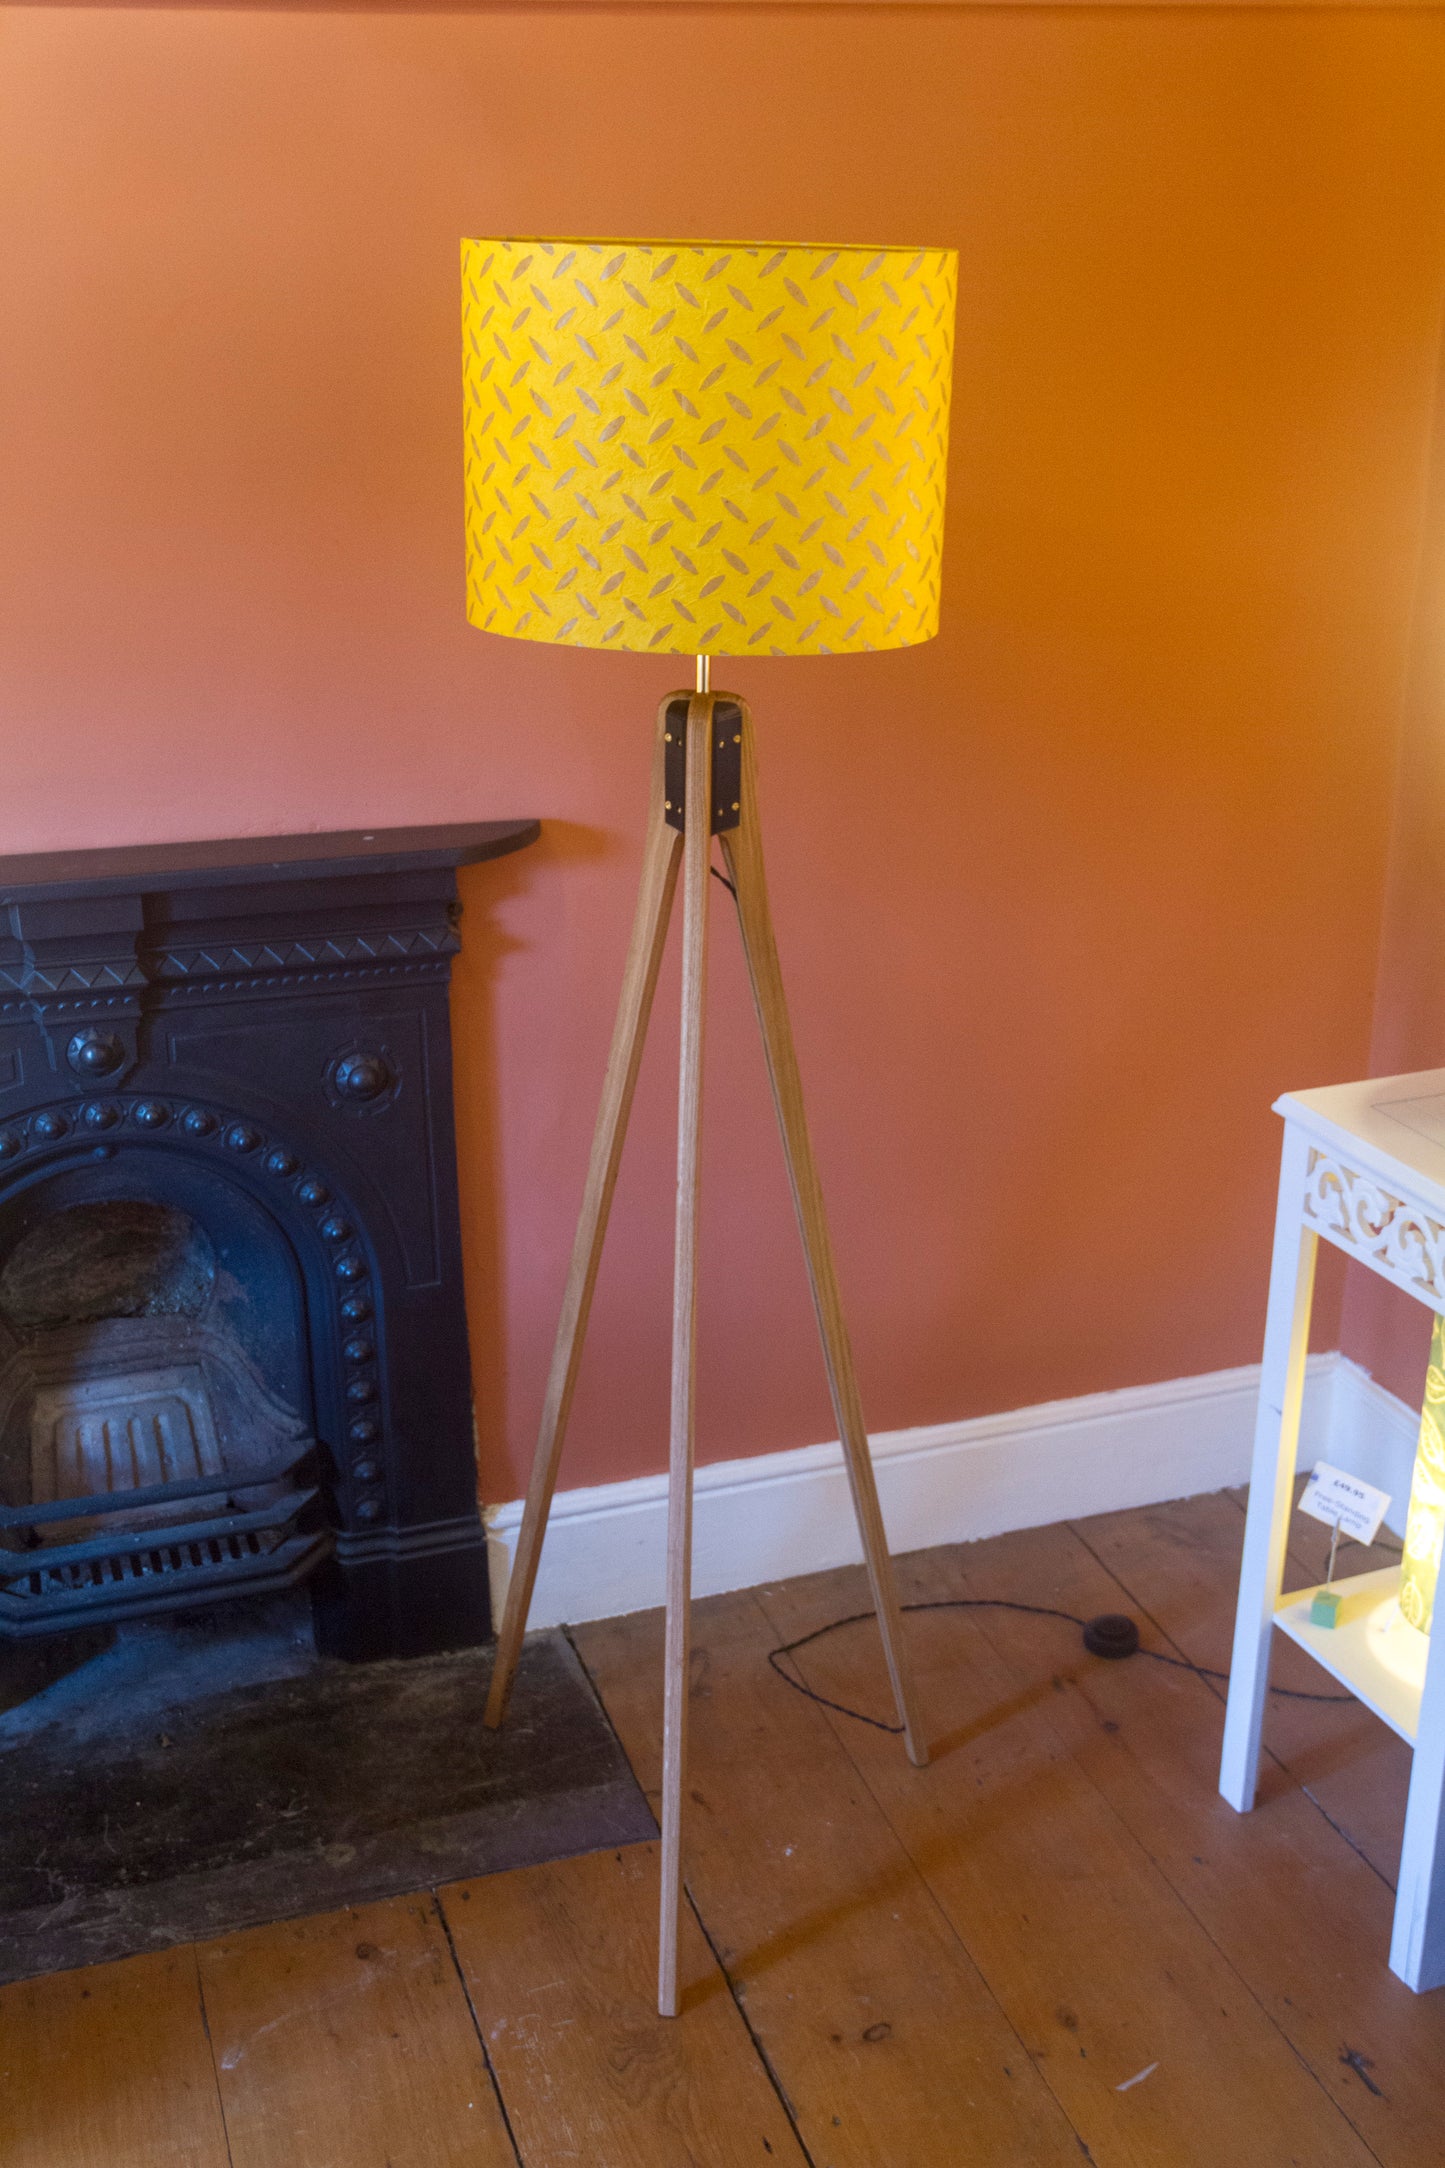 Oak Tripod Floor Lamp  - P89 ~ Batik Tread Plate Yellow